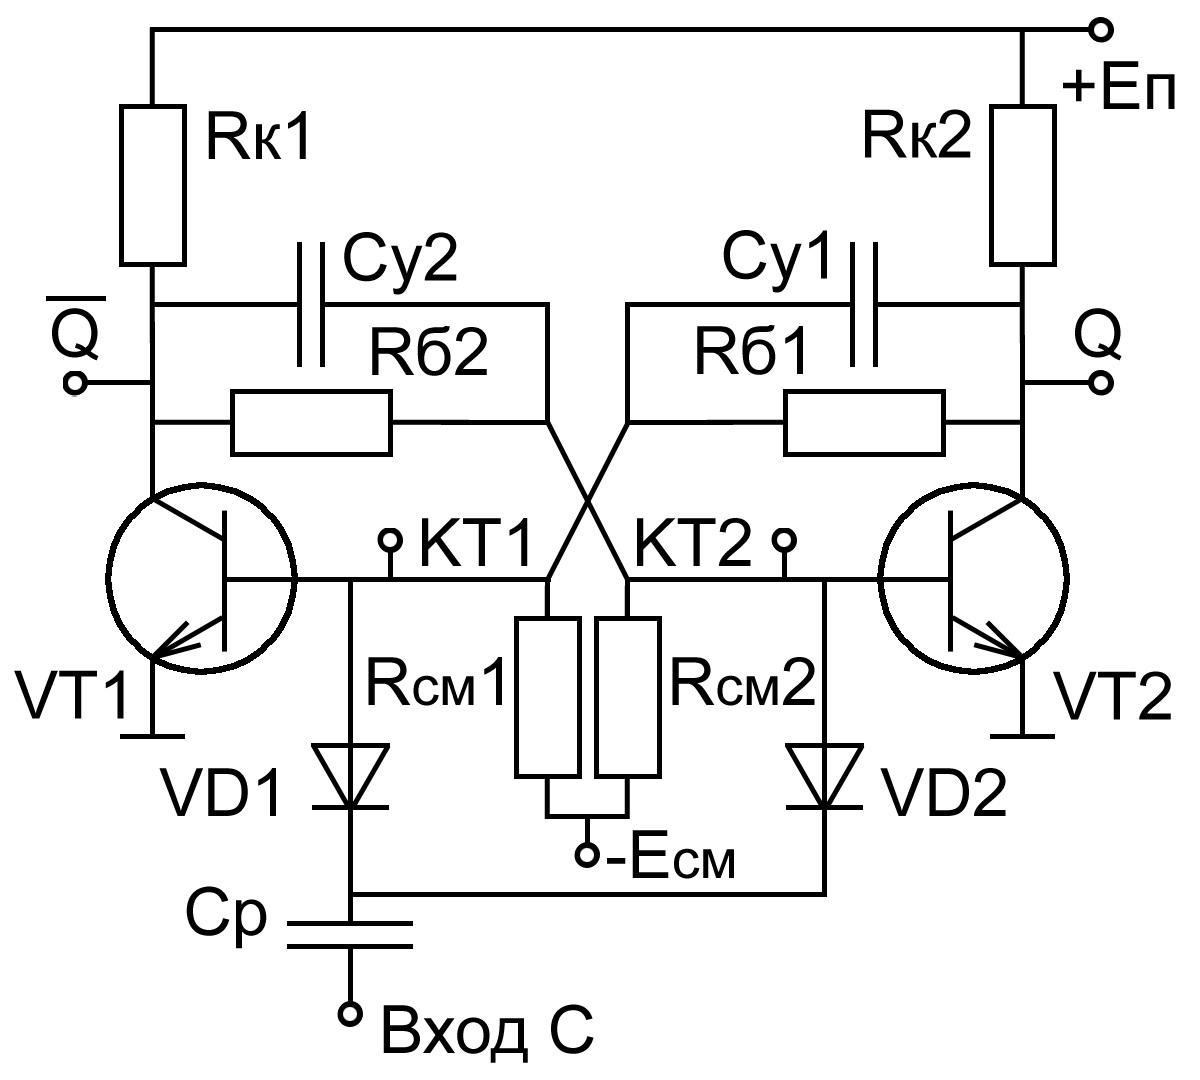 Симметричный триггер, собранный по типовой схеме на биполярных транзисторах